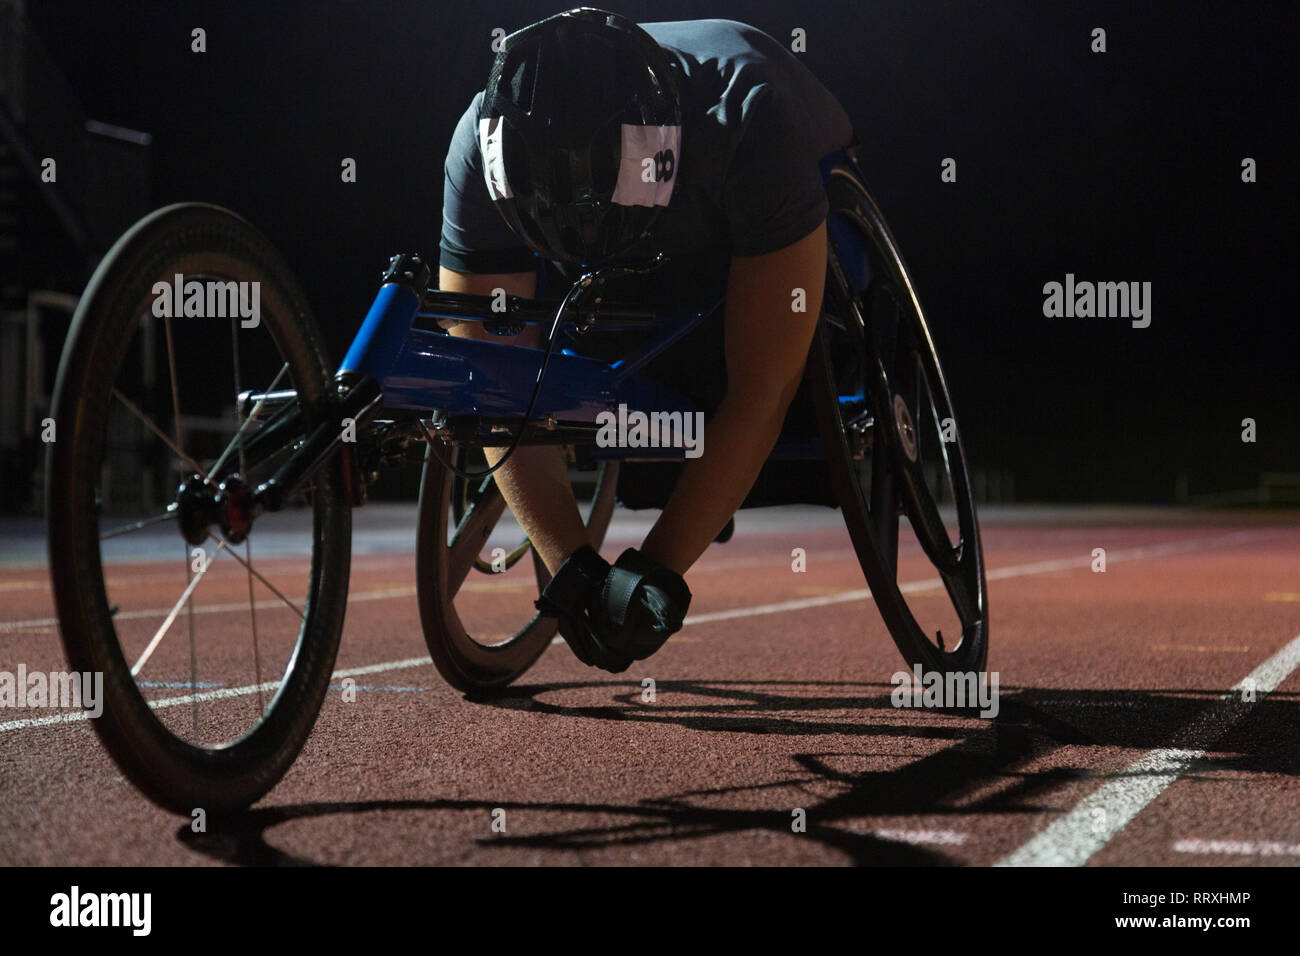 Fatigué athlète paraplégique reposant sur la piste après la course en fauteuil roulant sports at night Banque D'Images